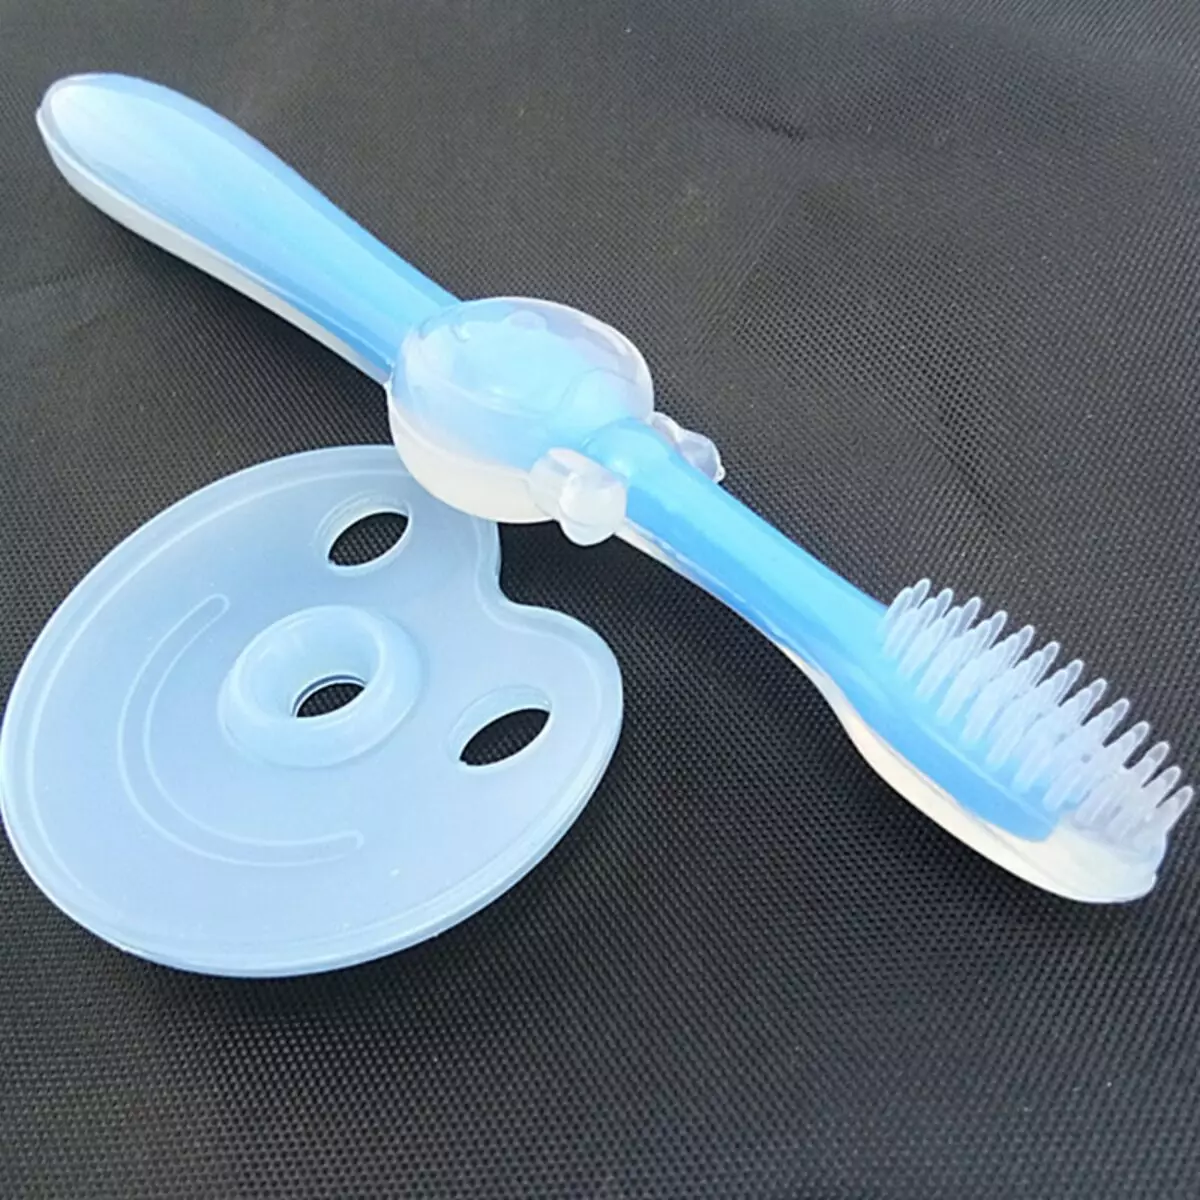 अपने दांतों को ब्रश करने के लिए बच्चे को कैसे सिखाएं? 2-3 साल में सफाई कैलेंडर और बच्चों के टाइमर की मदद से इसे कैसे सिखाएं? सीखना स्वच्छता अगर वह नहीं चाहता 16153_7